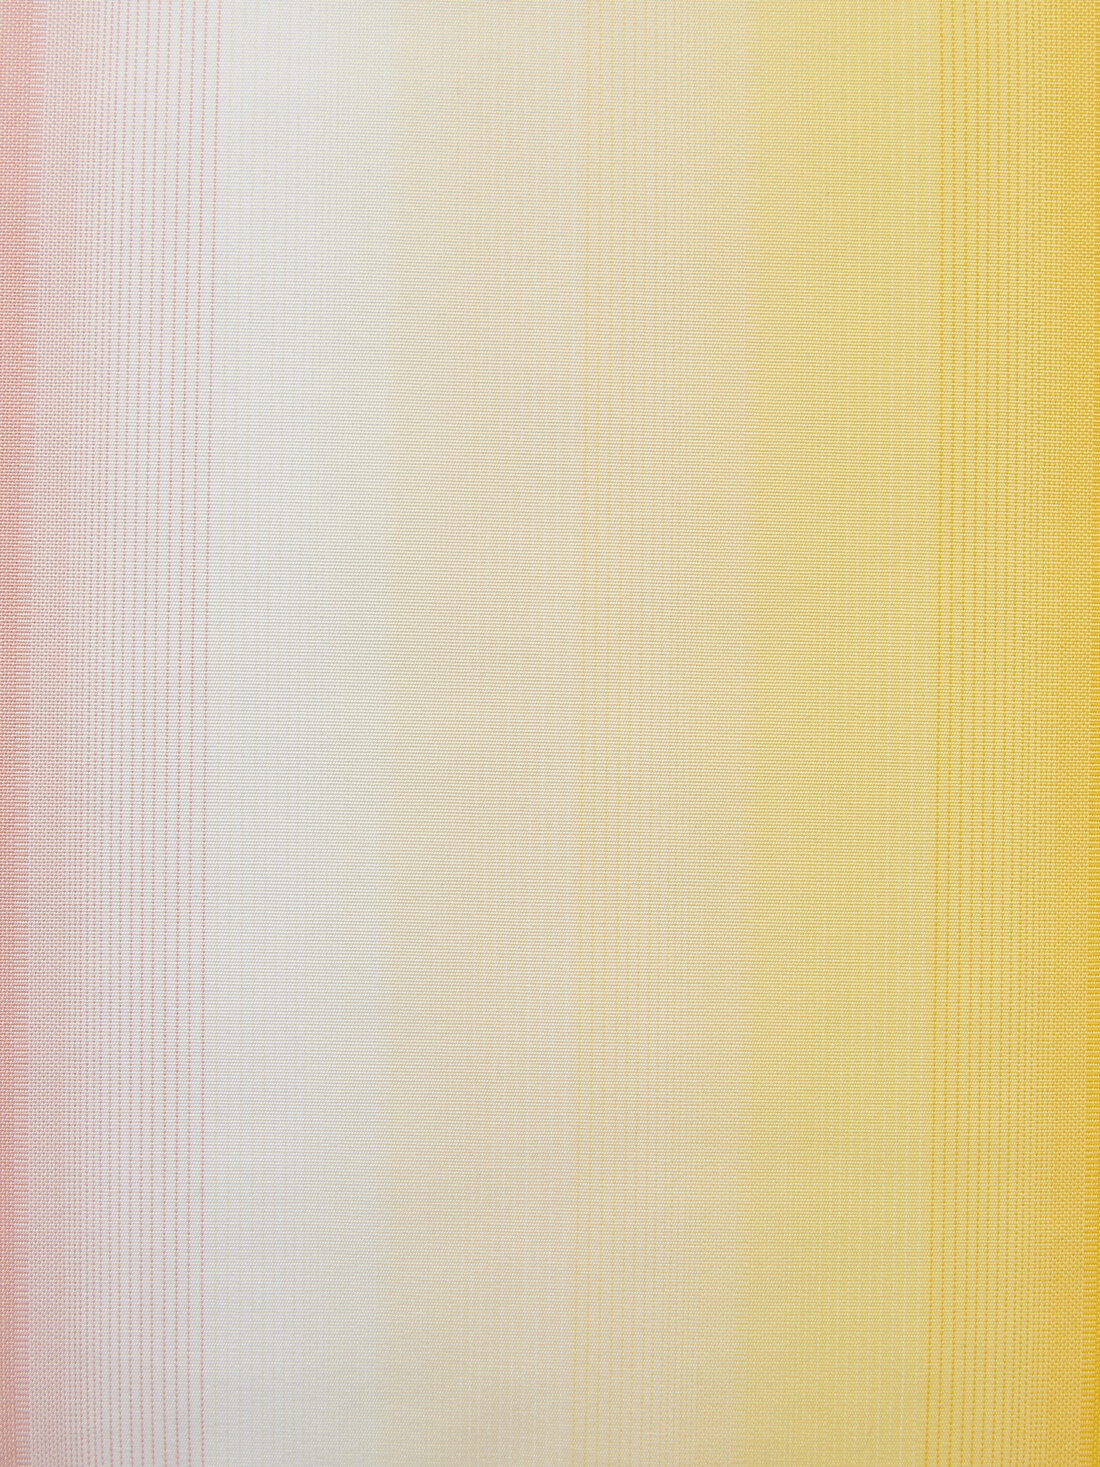 Cuscino da esterni Resort 60x60 cm in canvas sfumato multicolore, Multicolore  - 8051575837692 - 3